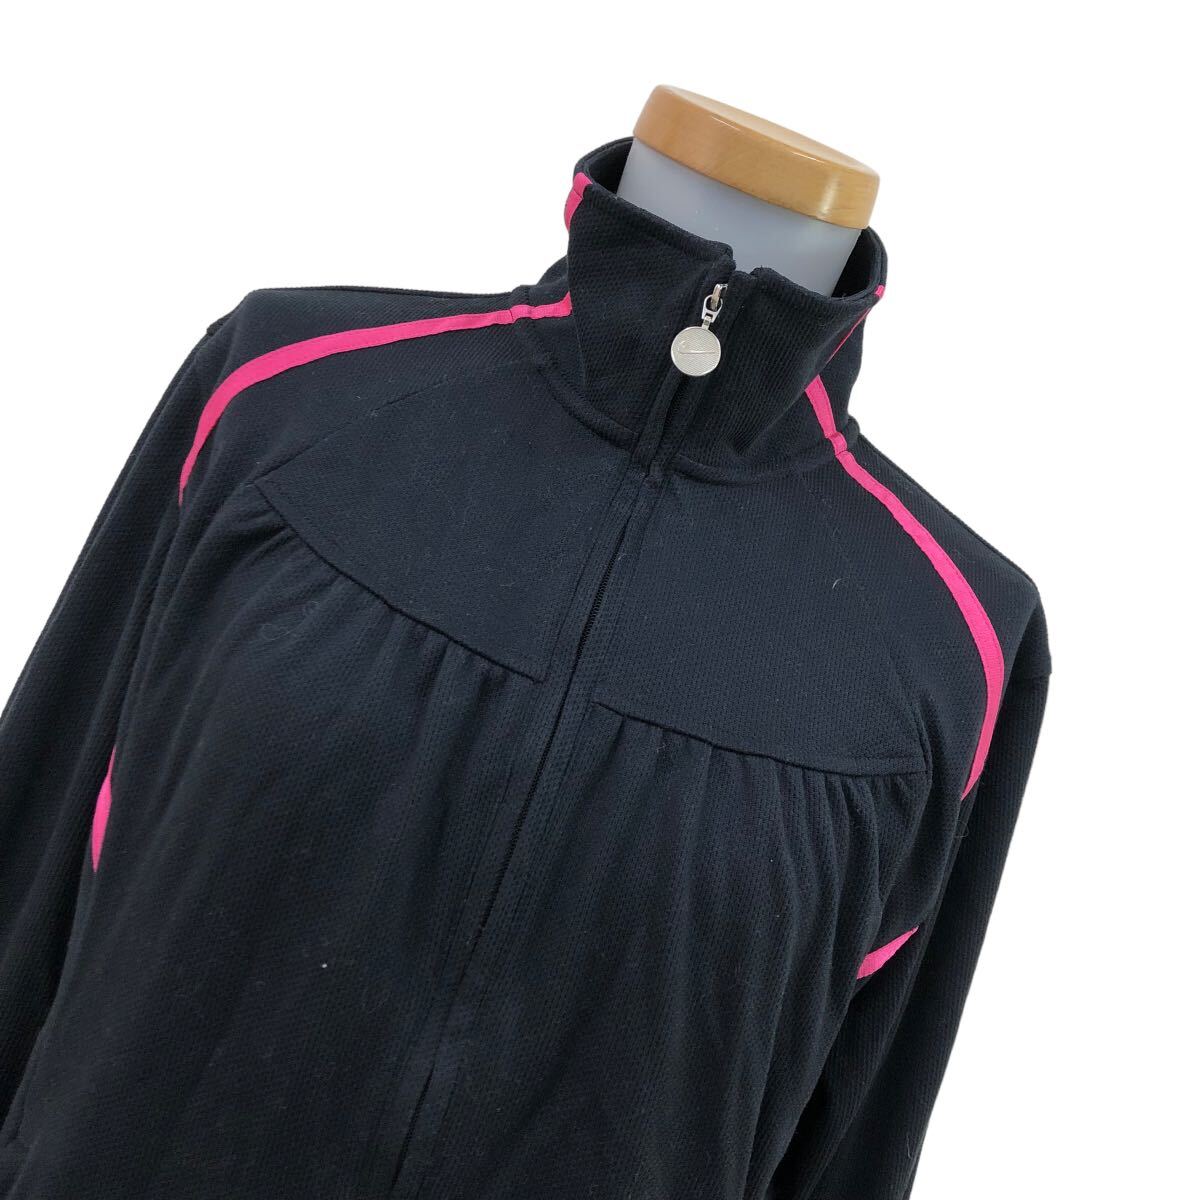 NS125 NIKE Nike GOLF Golf Golf одежда Parker жакет верхняя одежда перо ткань tops женский XL черный чёрный 